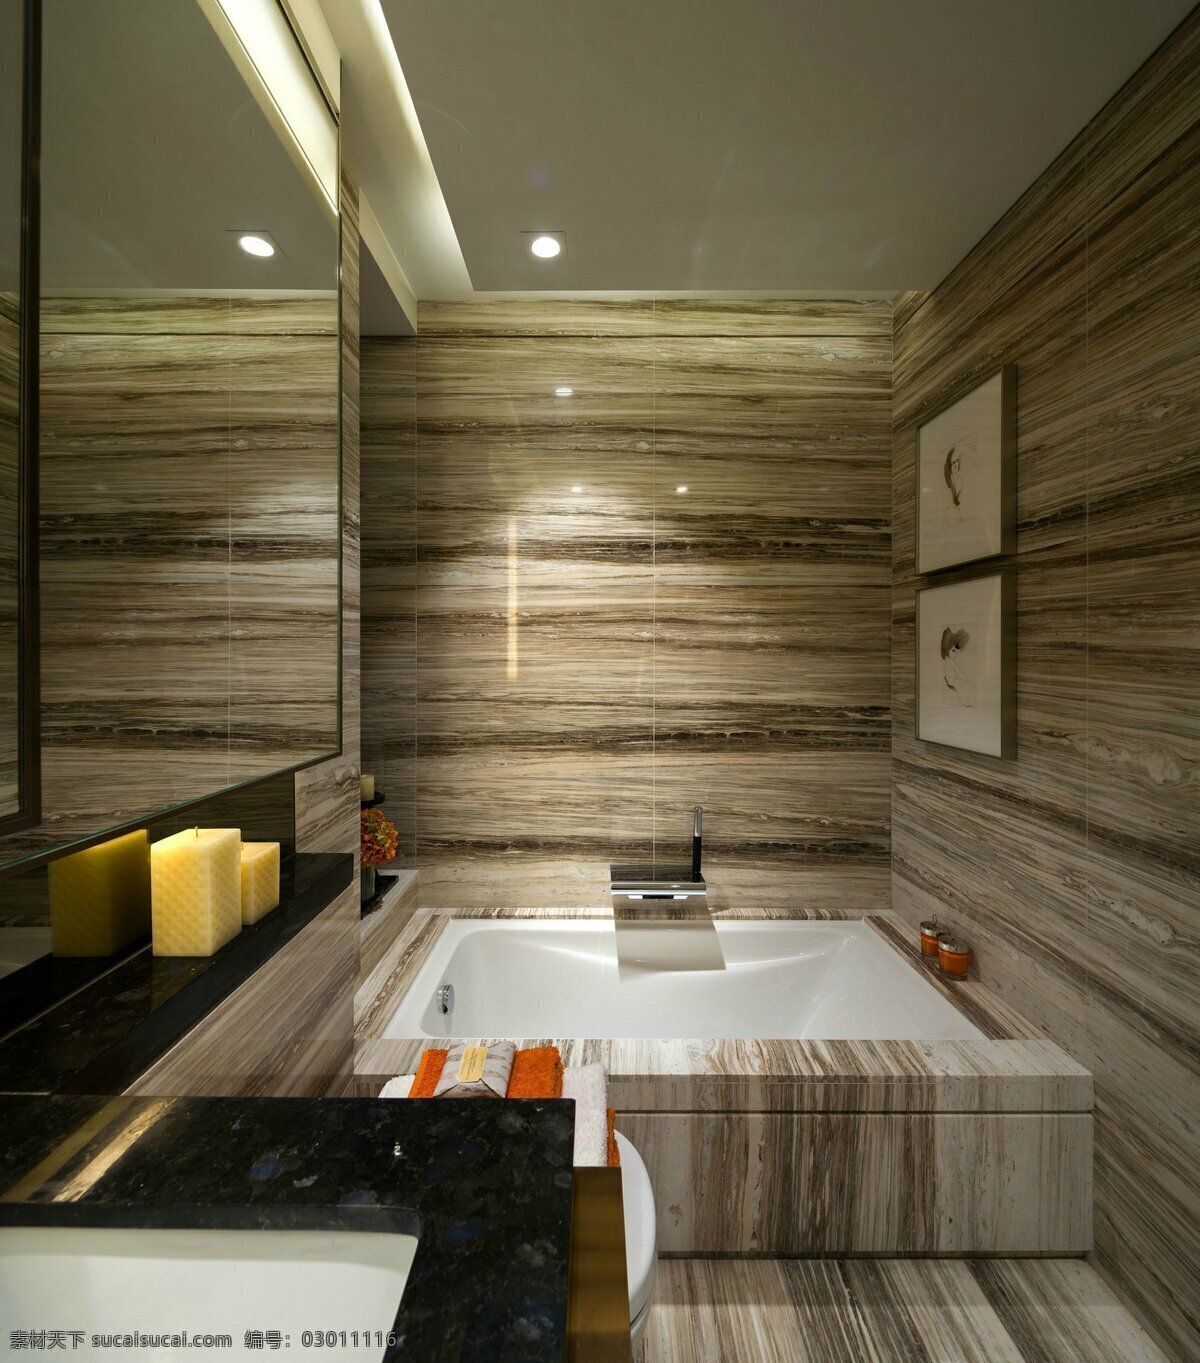 现代 简约 浴室 室内 装修设计 效果图 浴缸 洗手台 镜子 香氛 大理石 木材纹理 卫生间 家装效果图